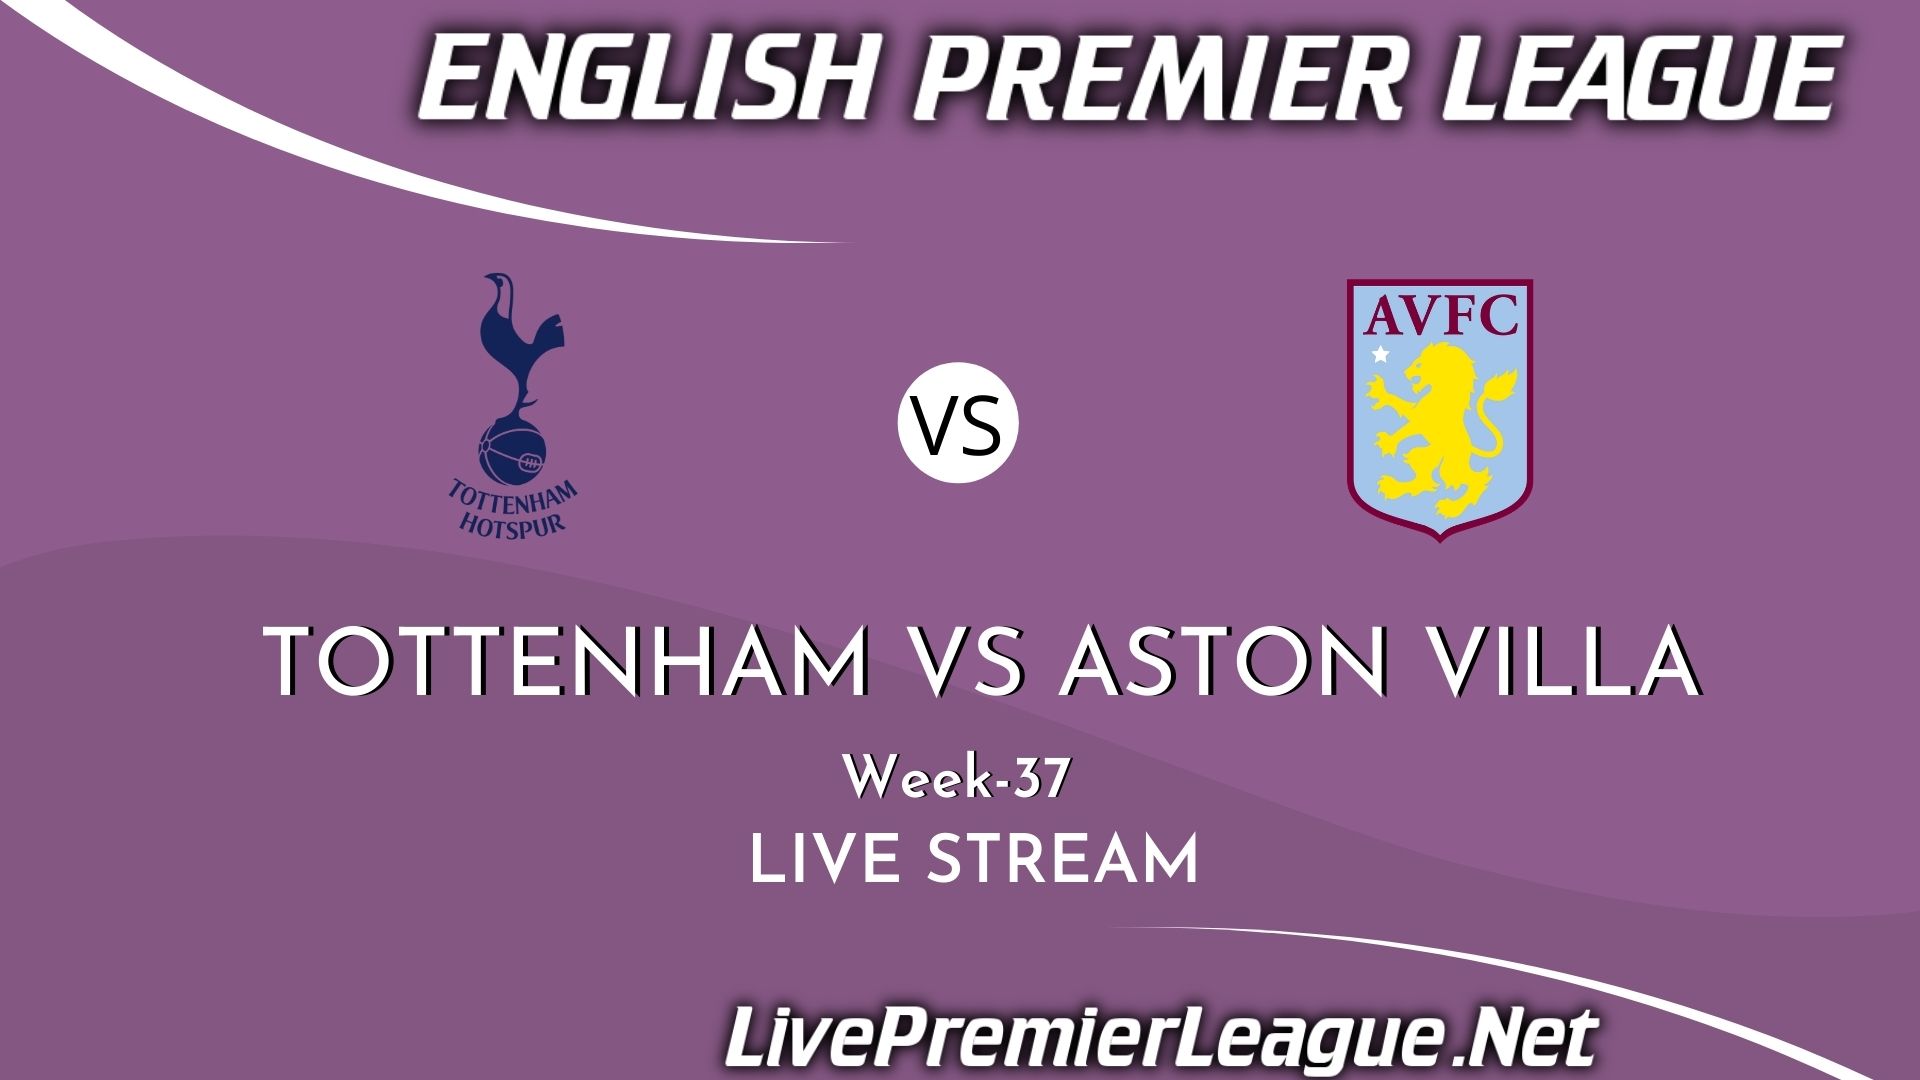 Tottenham Hotspur Vs Aston Villa Live Stream 2021 | EPL Week 37